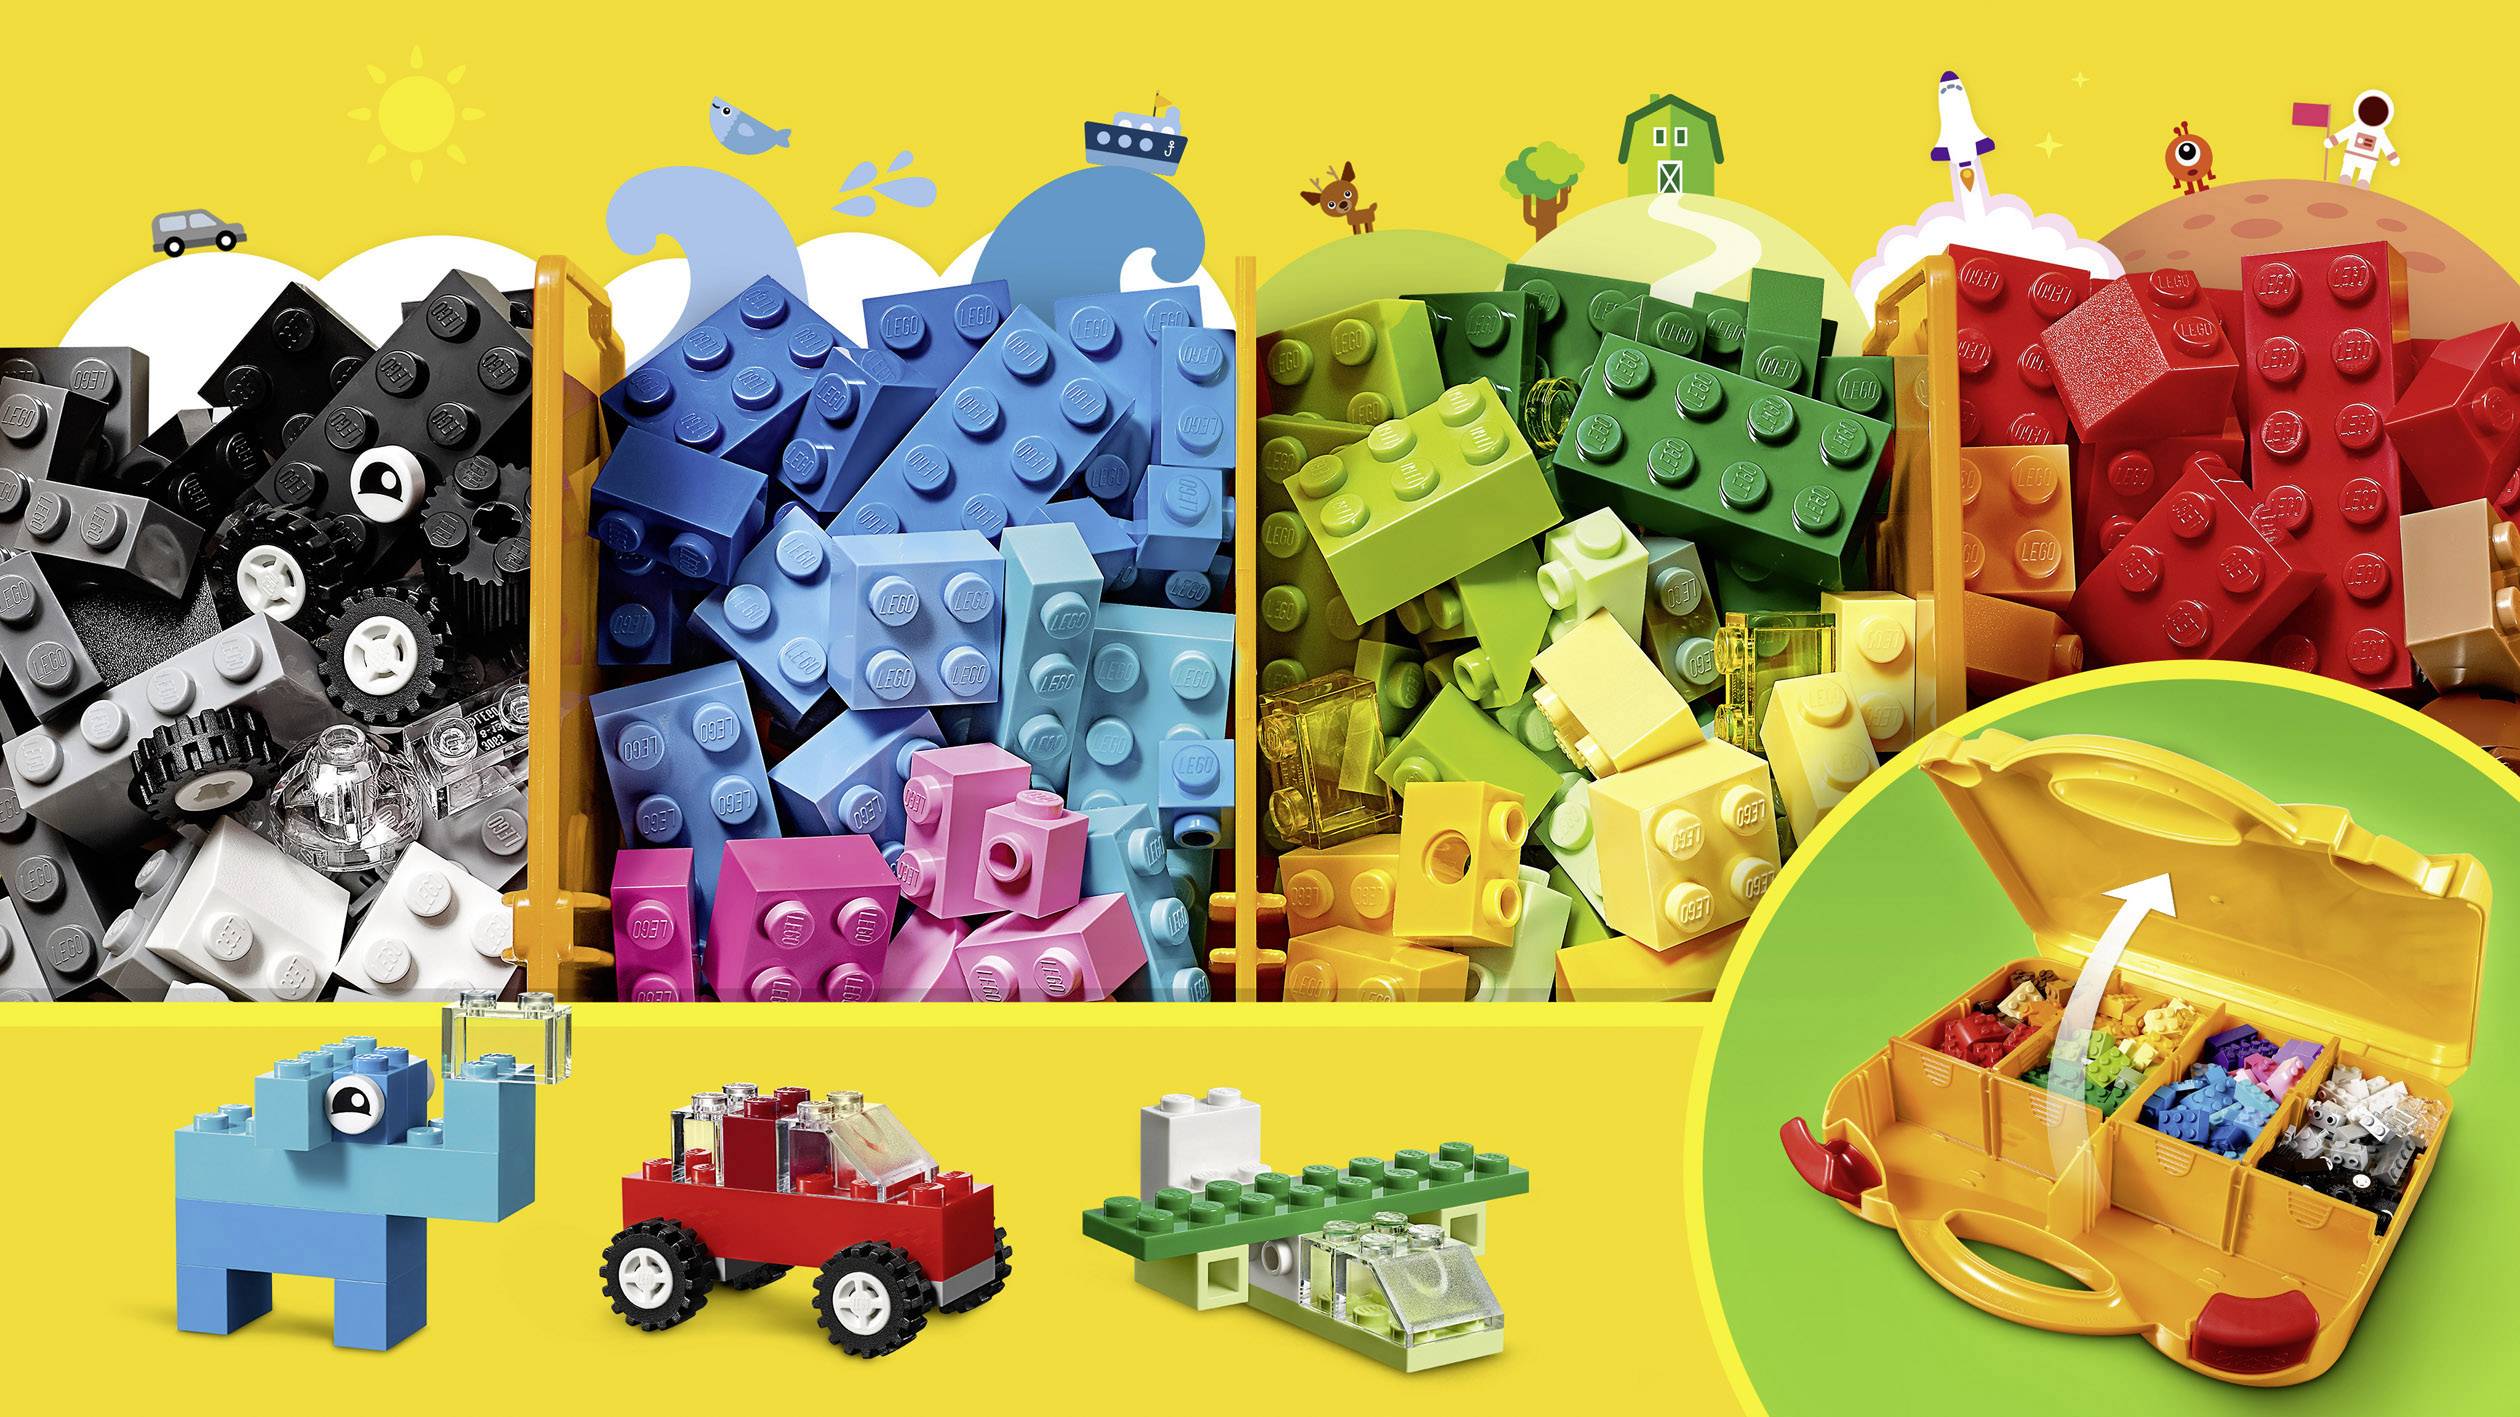 Конструктор LEGO Classic чемоданчик для творчества и конструирования